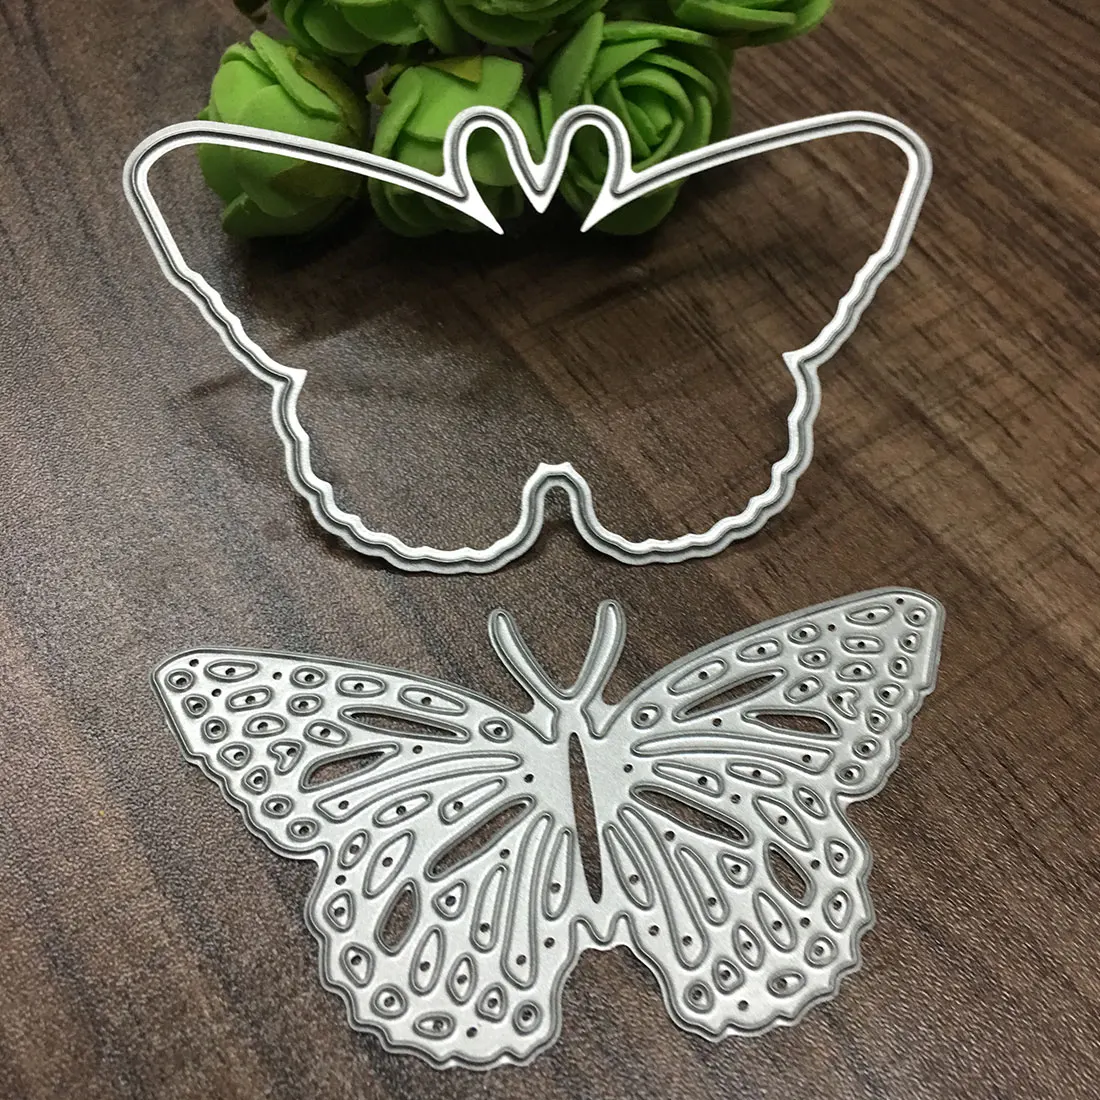 Новые металлические бабочки трафареты для пресс-формы для DIY скрапбукинга/фото украшение для альбома тиснение бумажные карточки ручной работы